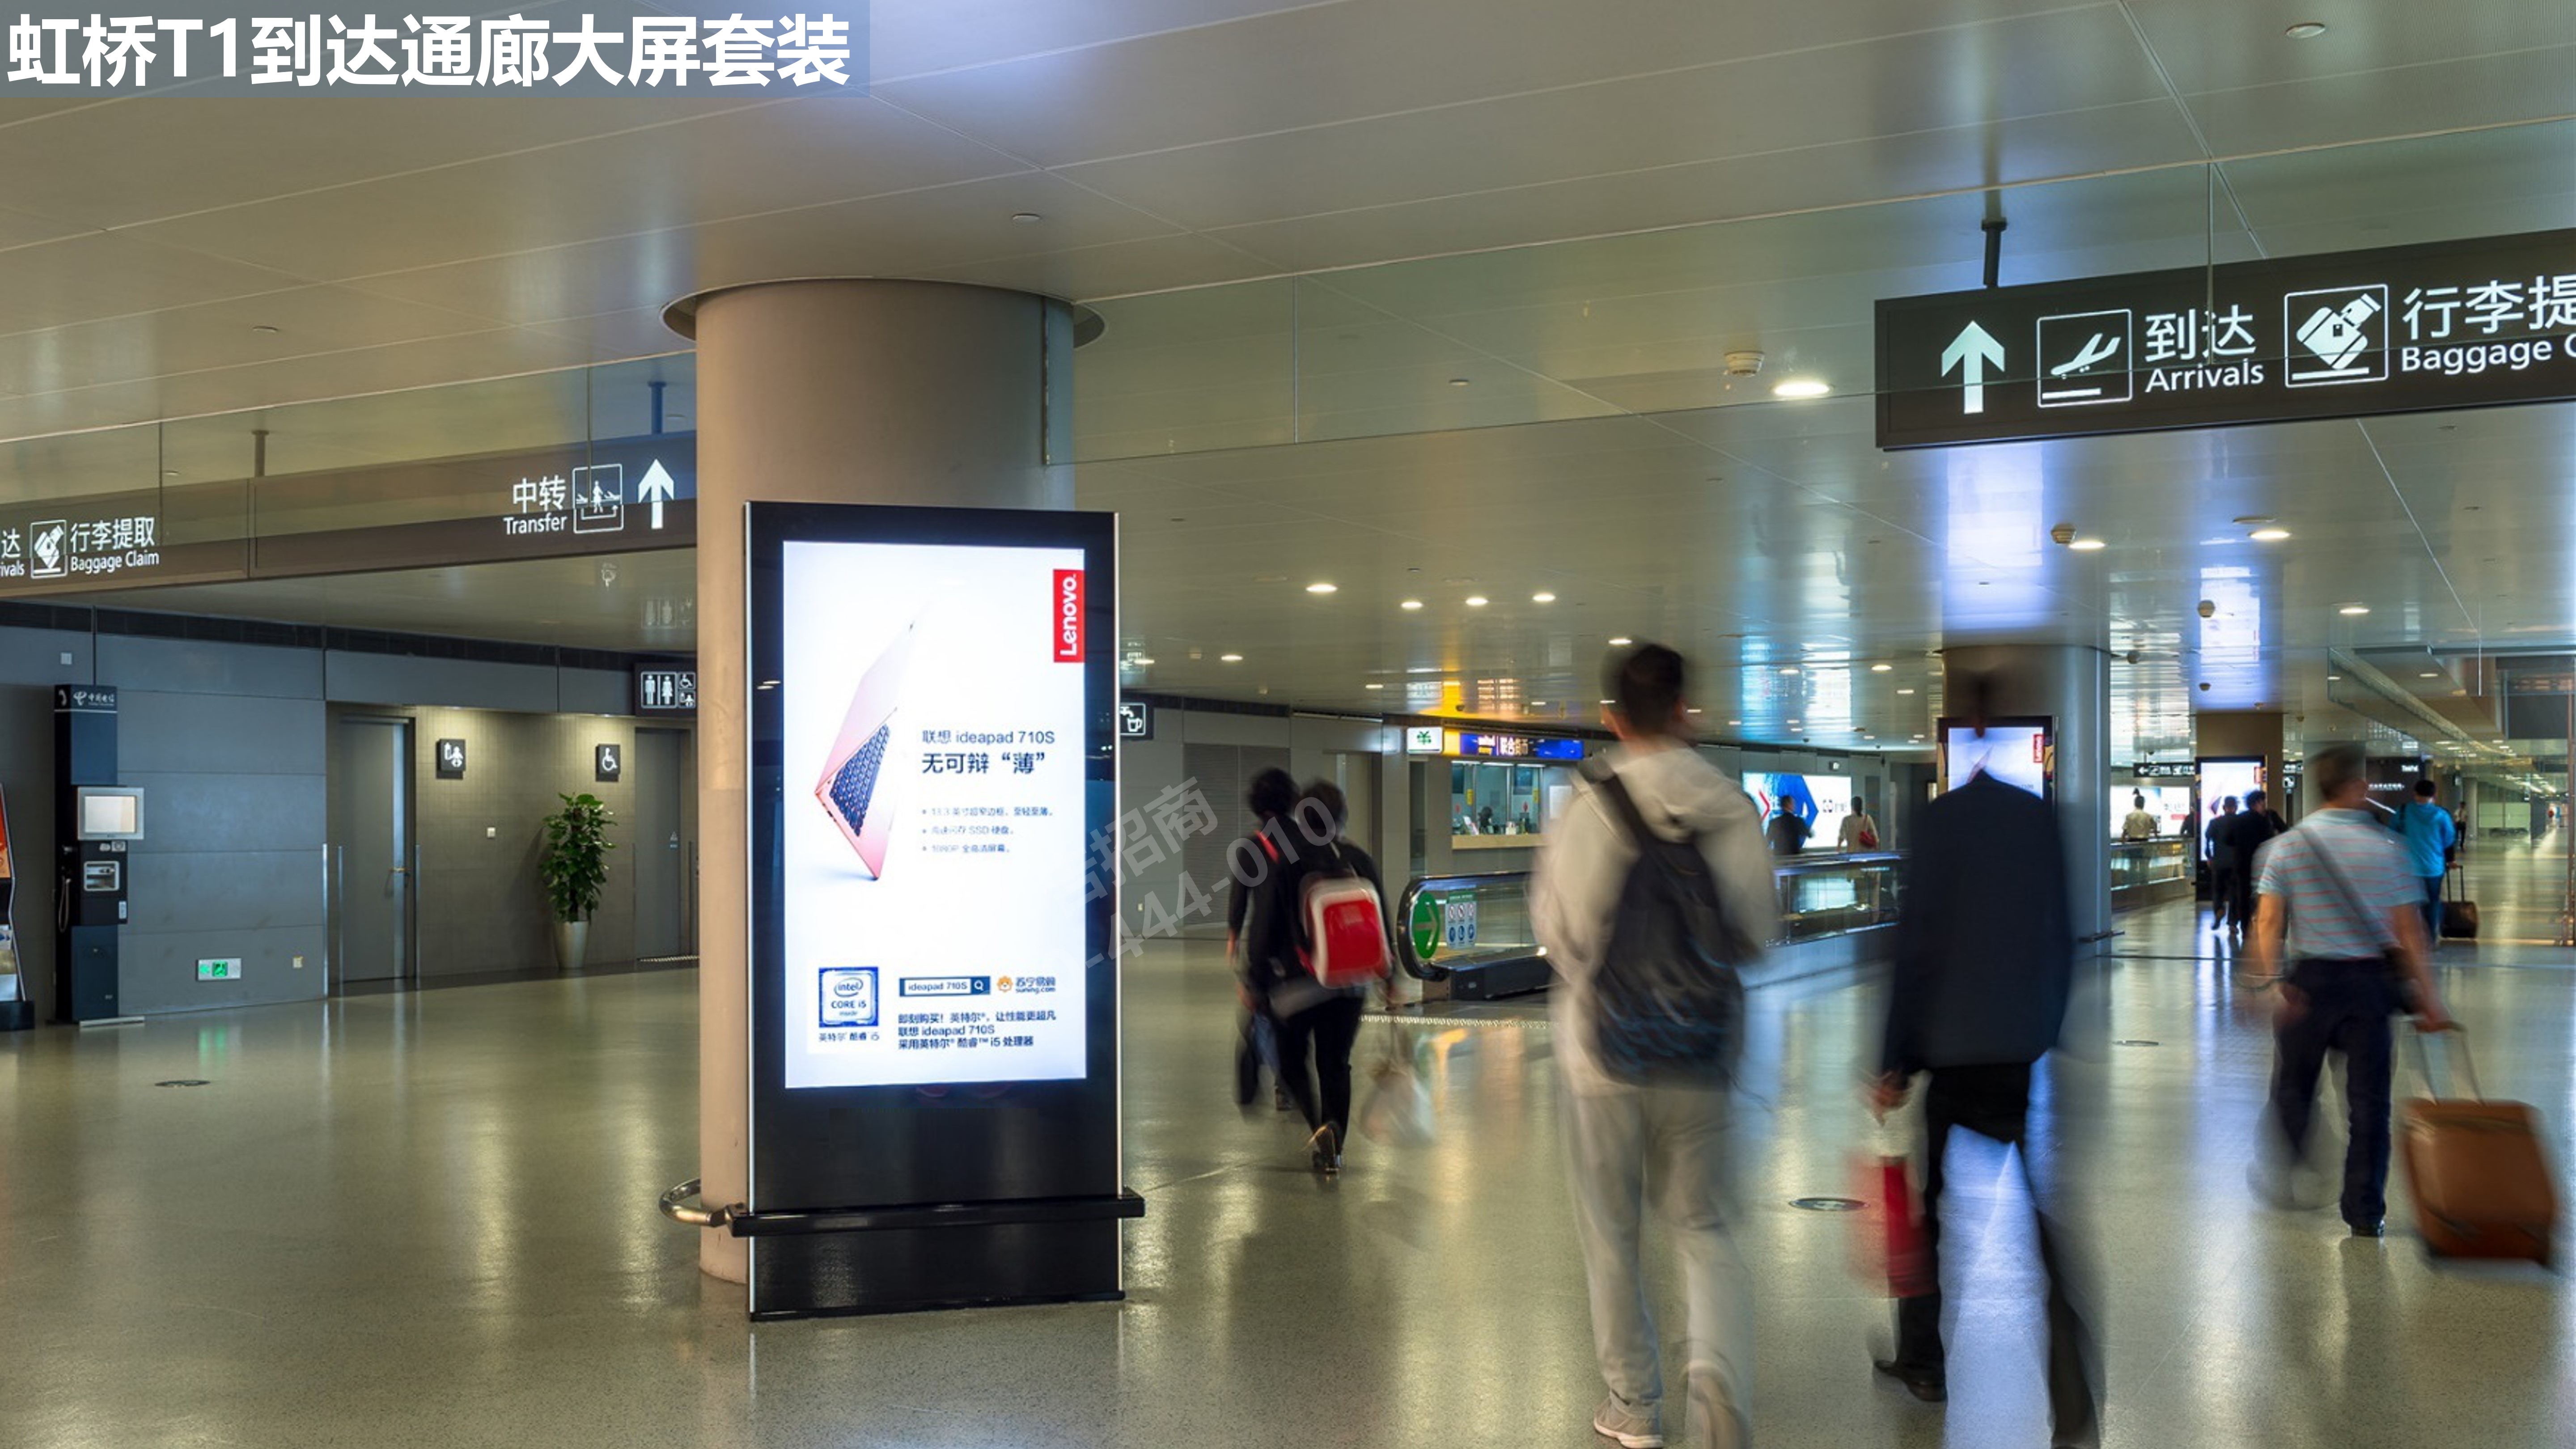 上海机场到达通廊广告